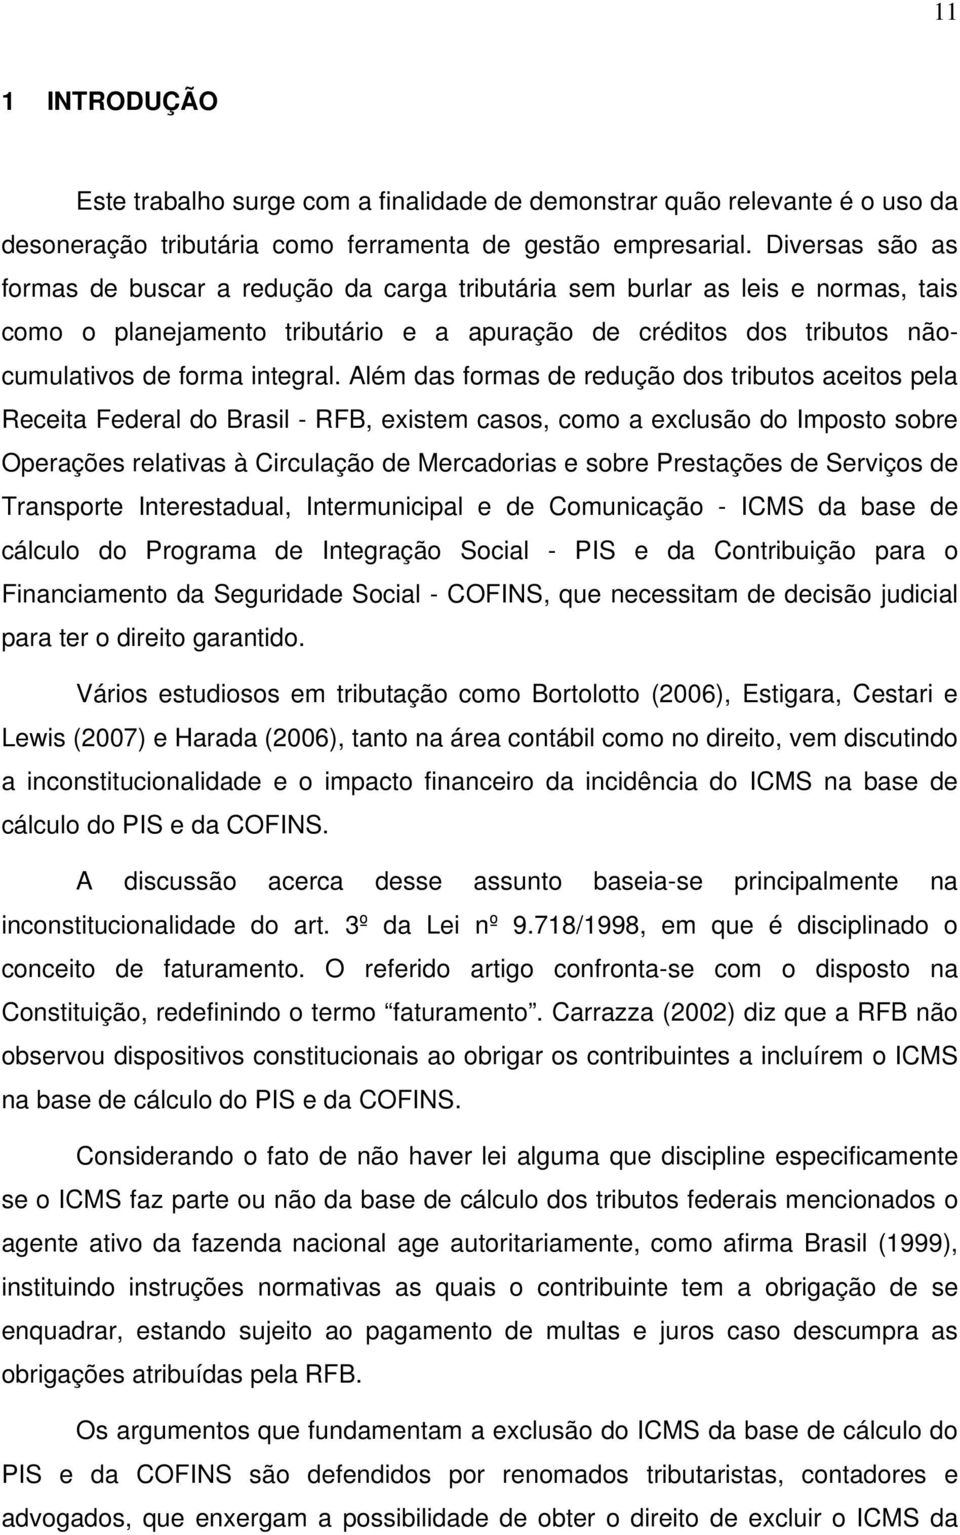 Além das formas de redução dos tributos aceitos pela Receita Federal do Brasil - RFB, existem casos, como a exclusão do Imposto sobre Operações relativas à Circulação de Mercadorias e sobre